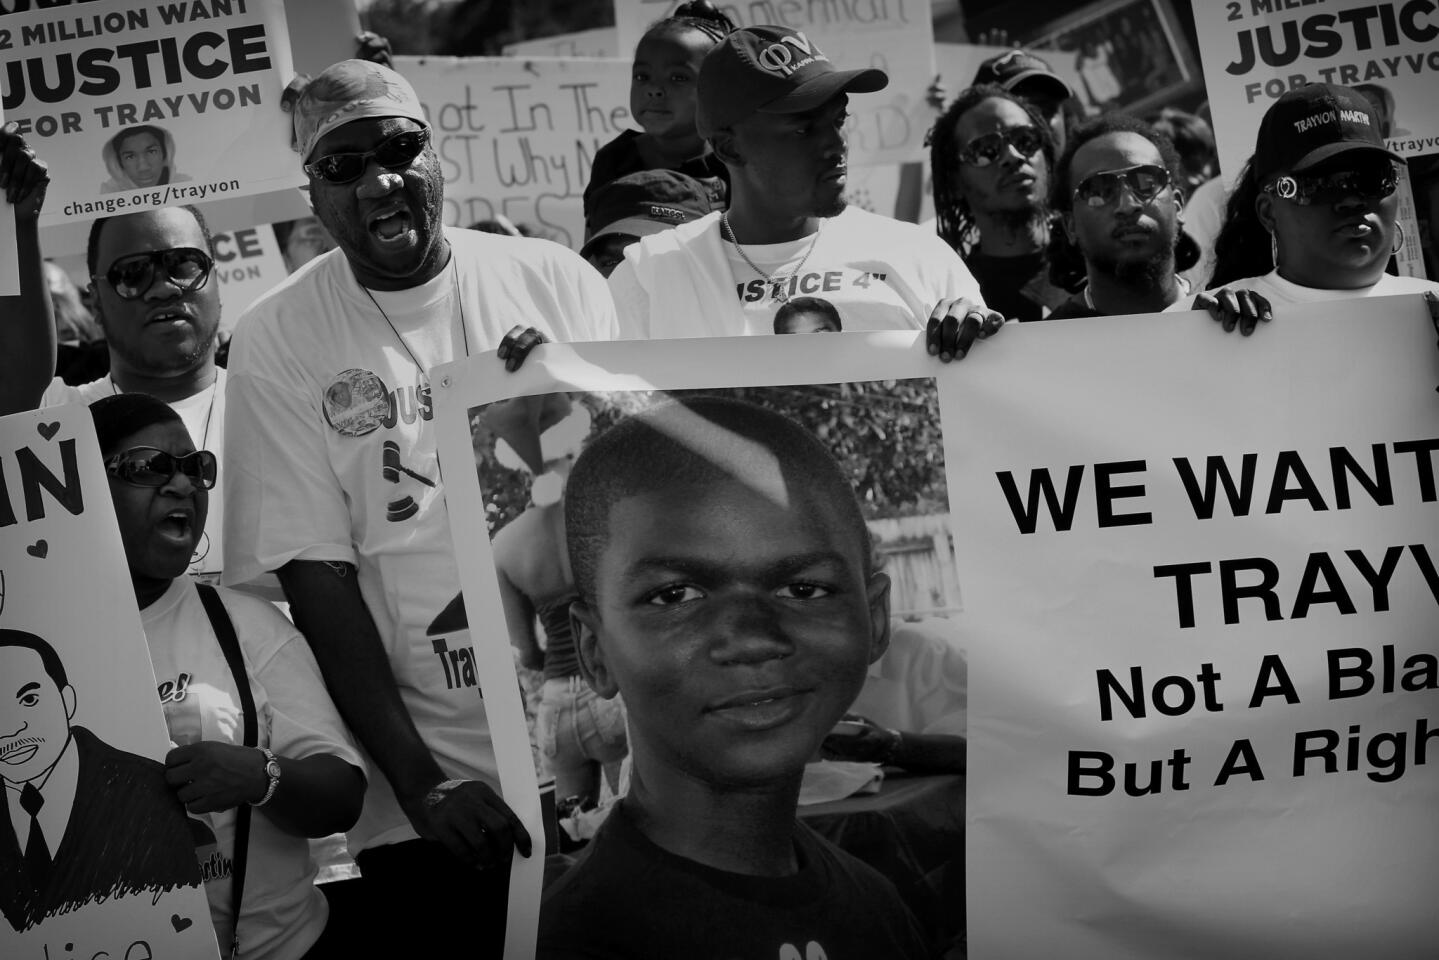 Trayvon Martin story: Sanford, Florida